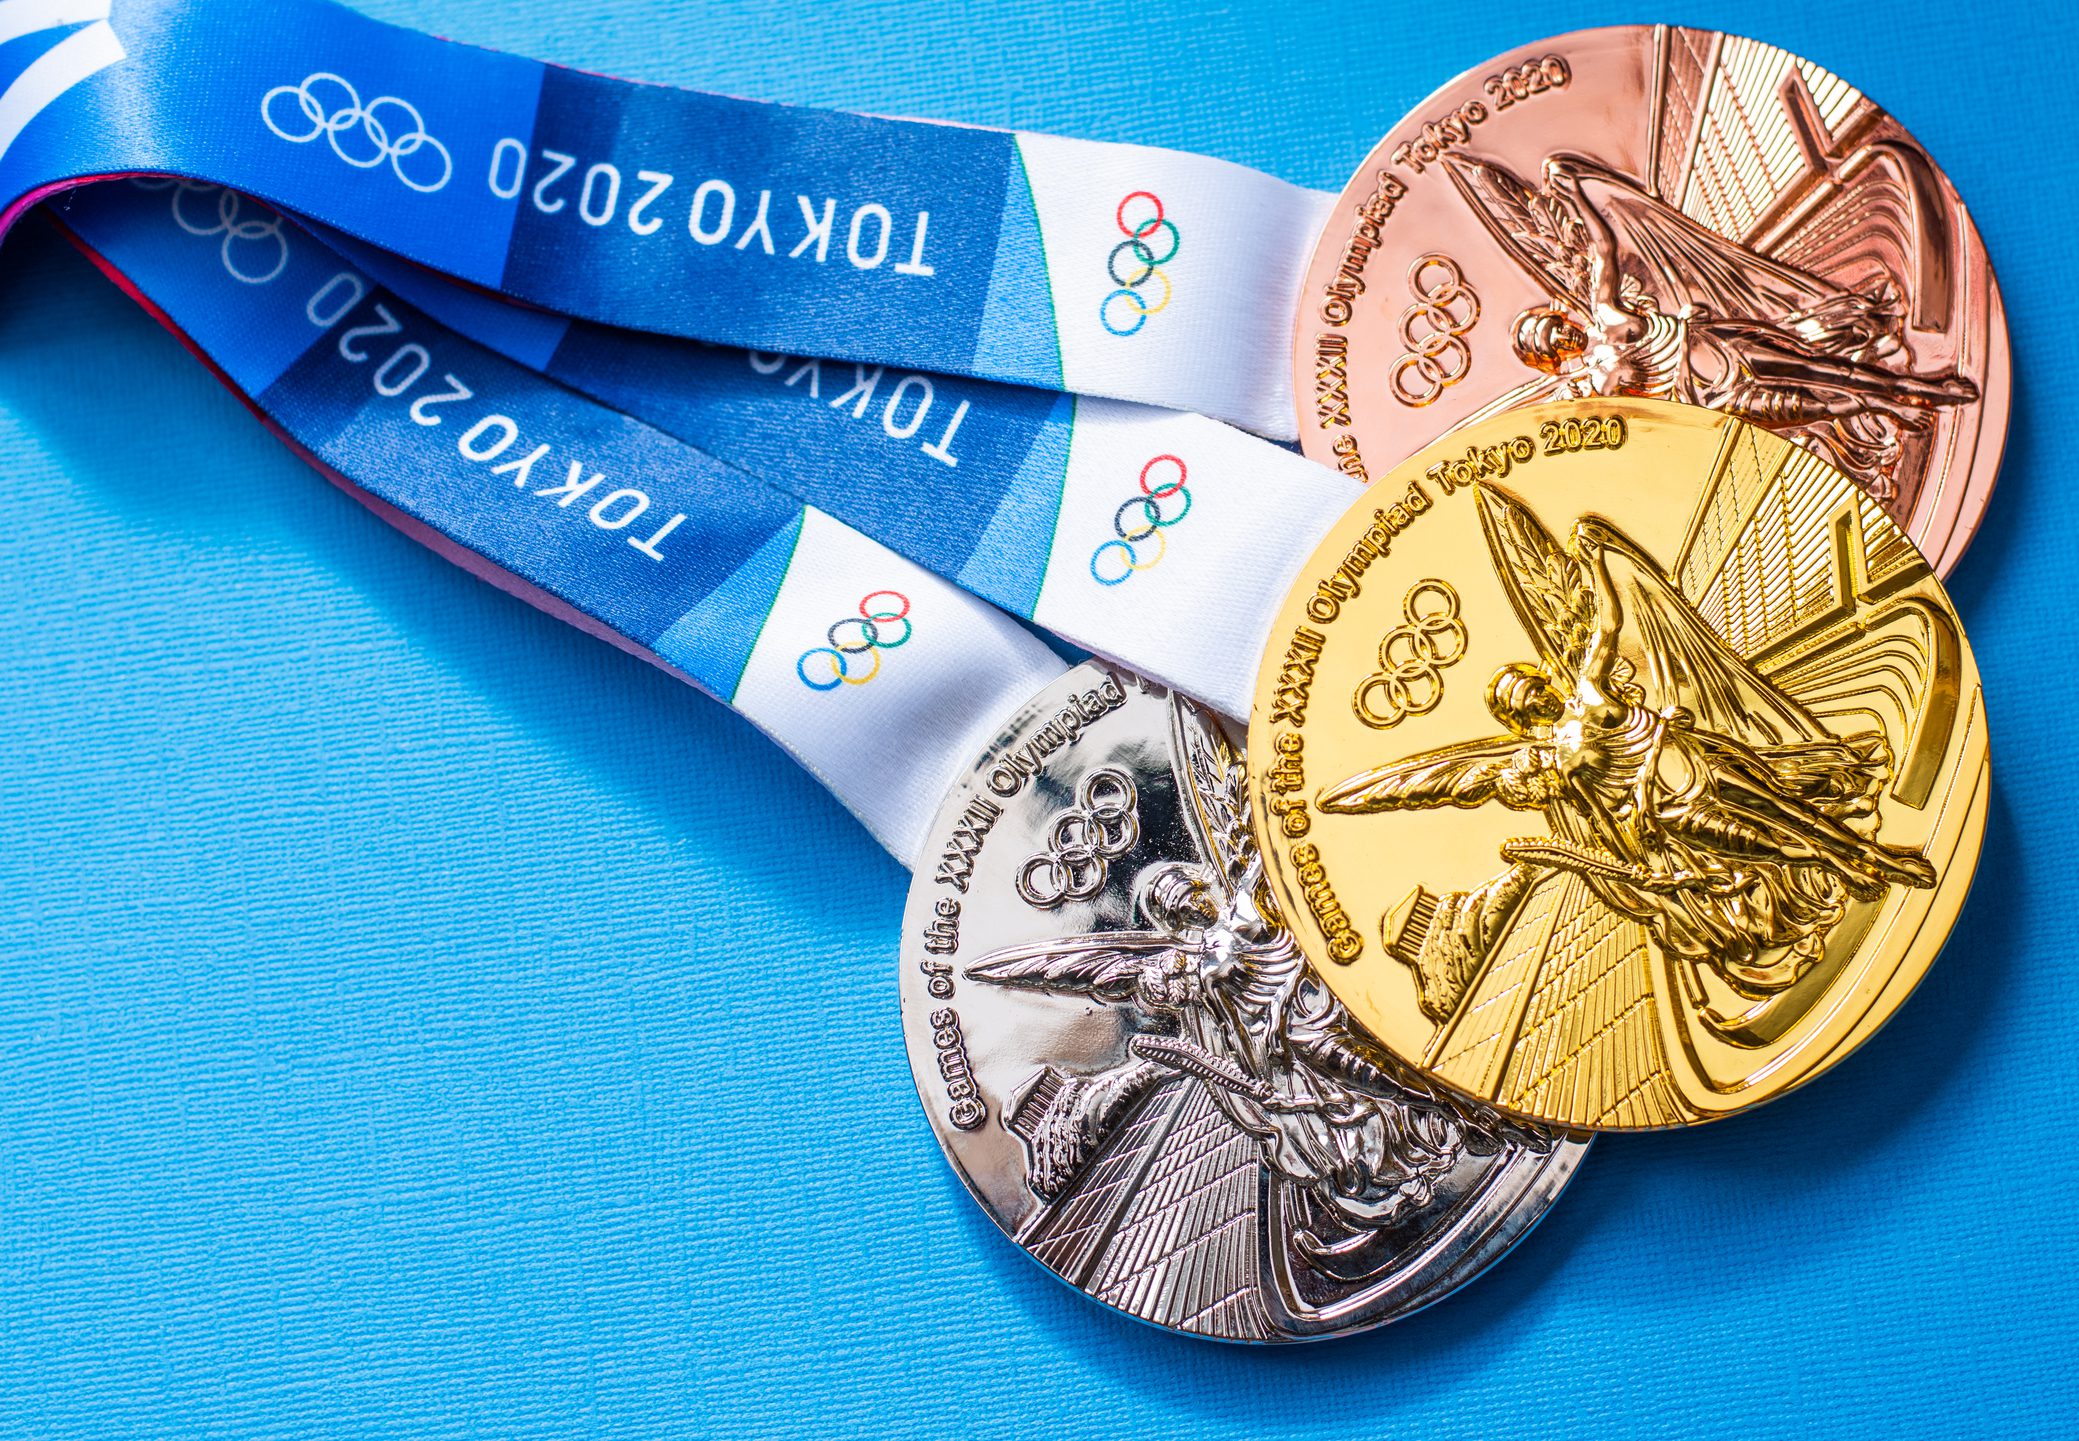 Сколько спортсменов получили медали. Бронзовая медаль Олимпийских игр 2020. Бронзовая медаль Олимпийских игр 2018. Медали Украины на Олимпиаде. Золотой Олимпийский медал Лондон.